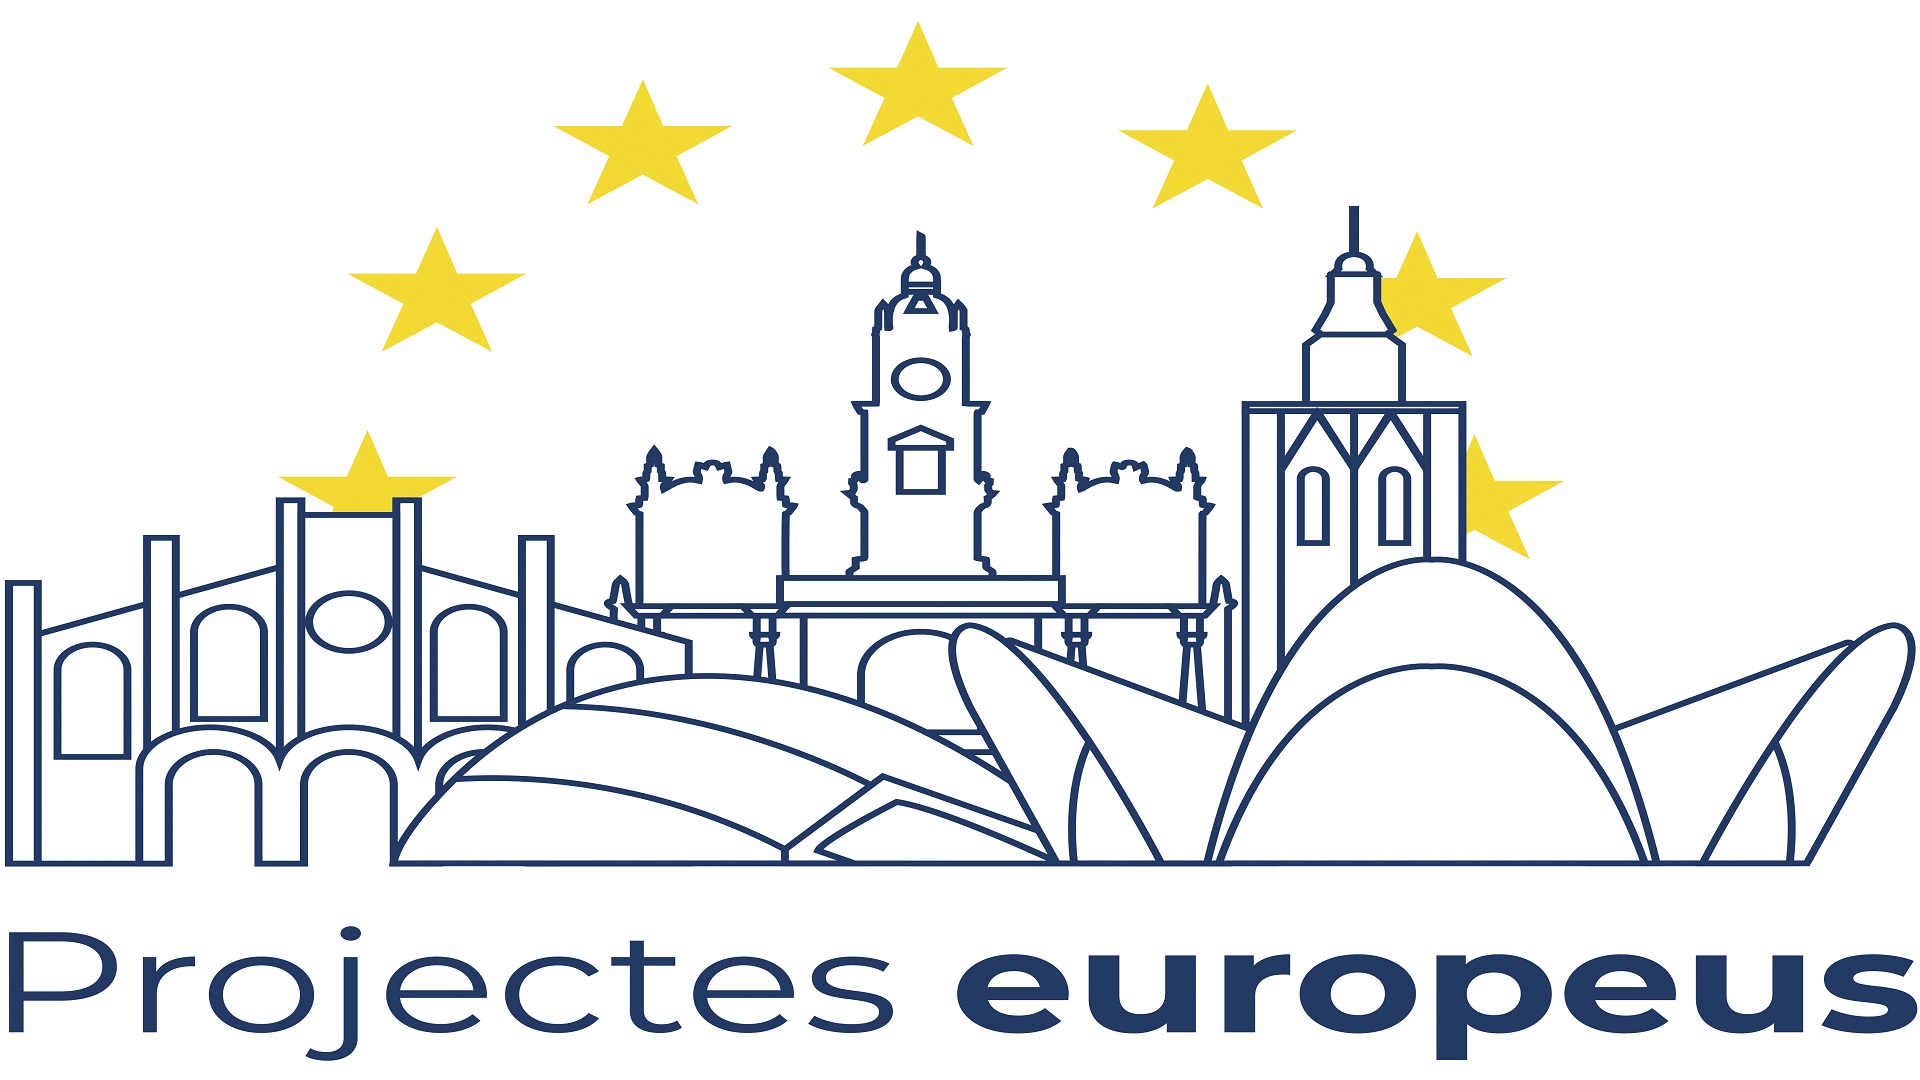 Projectes europeus